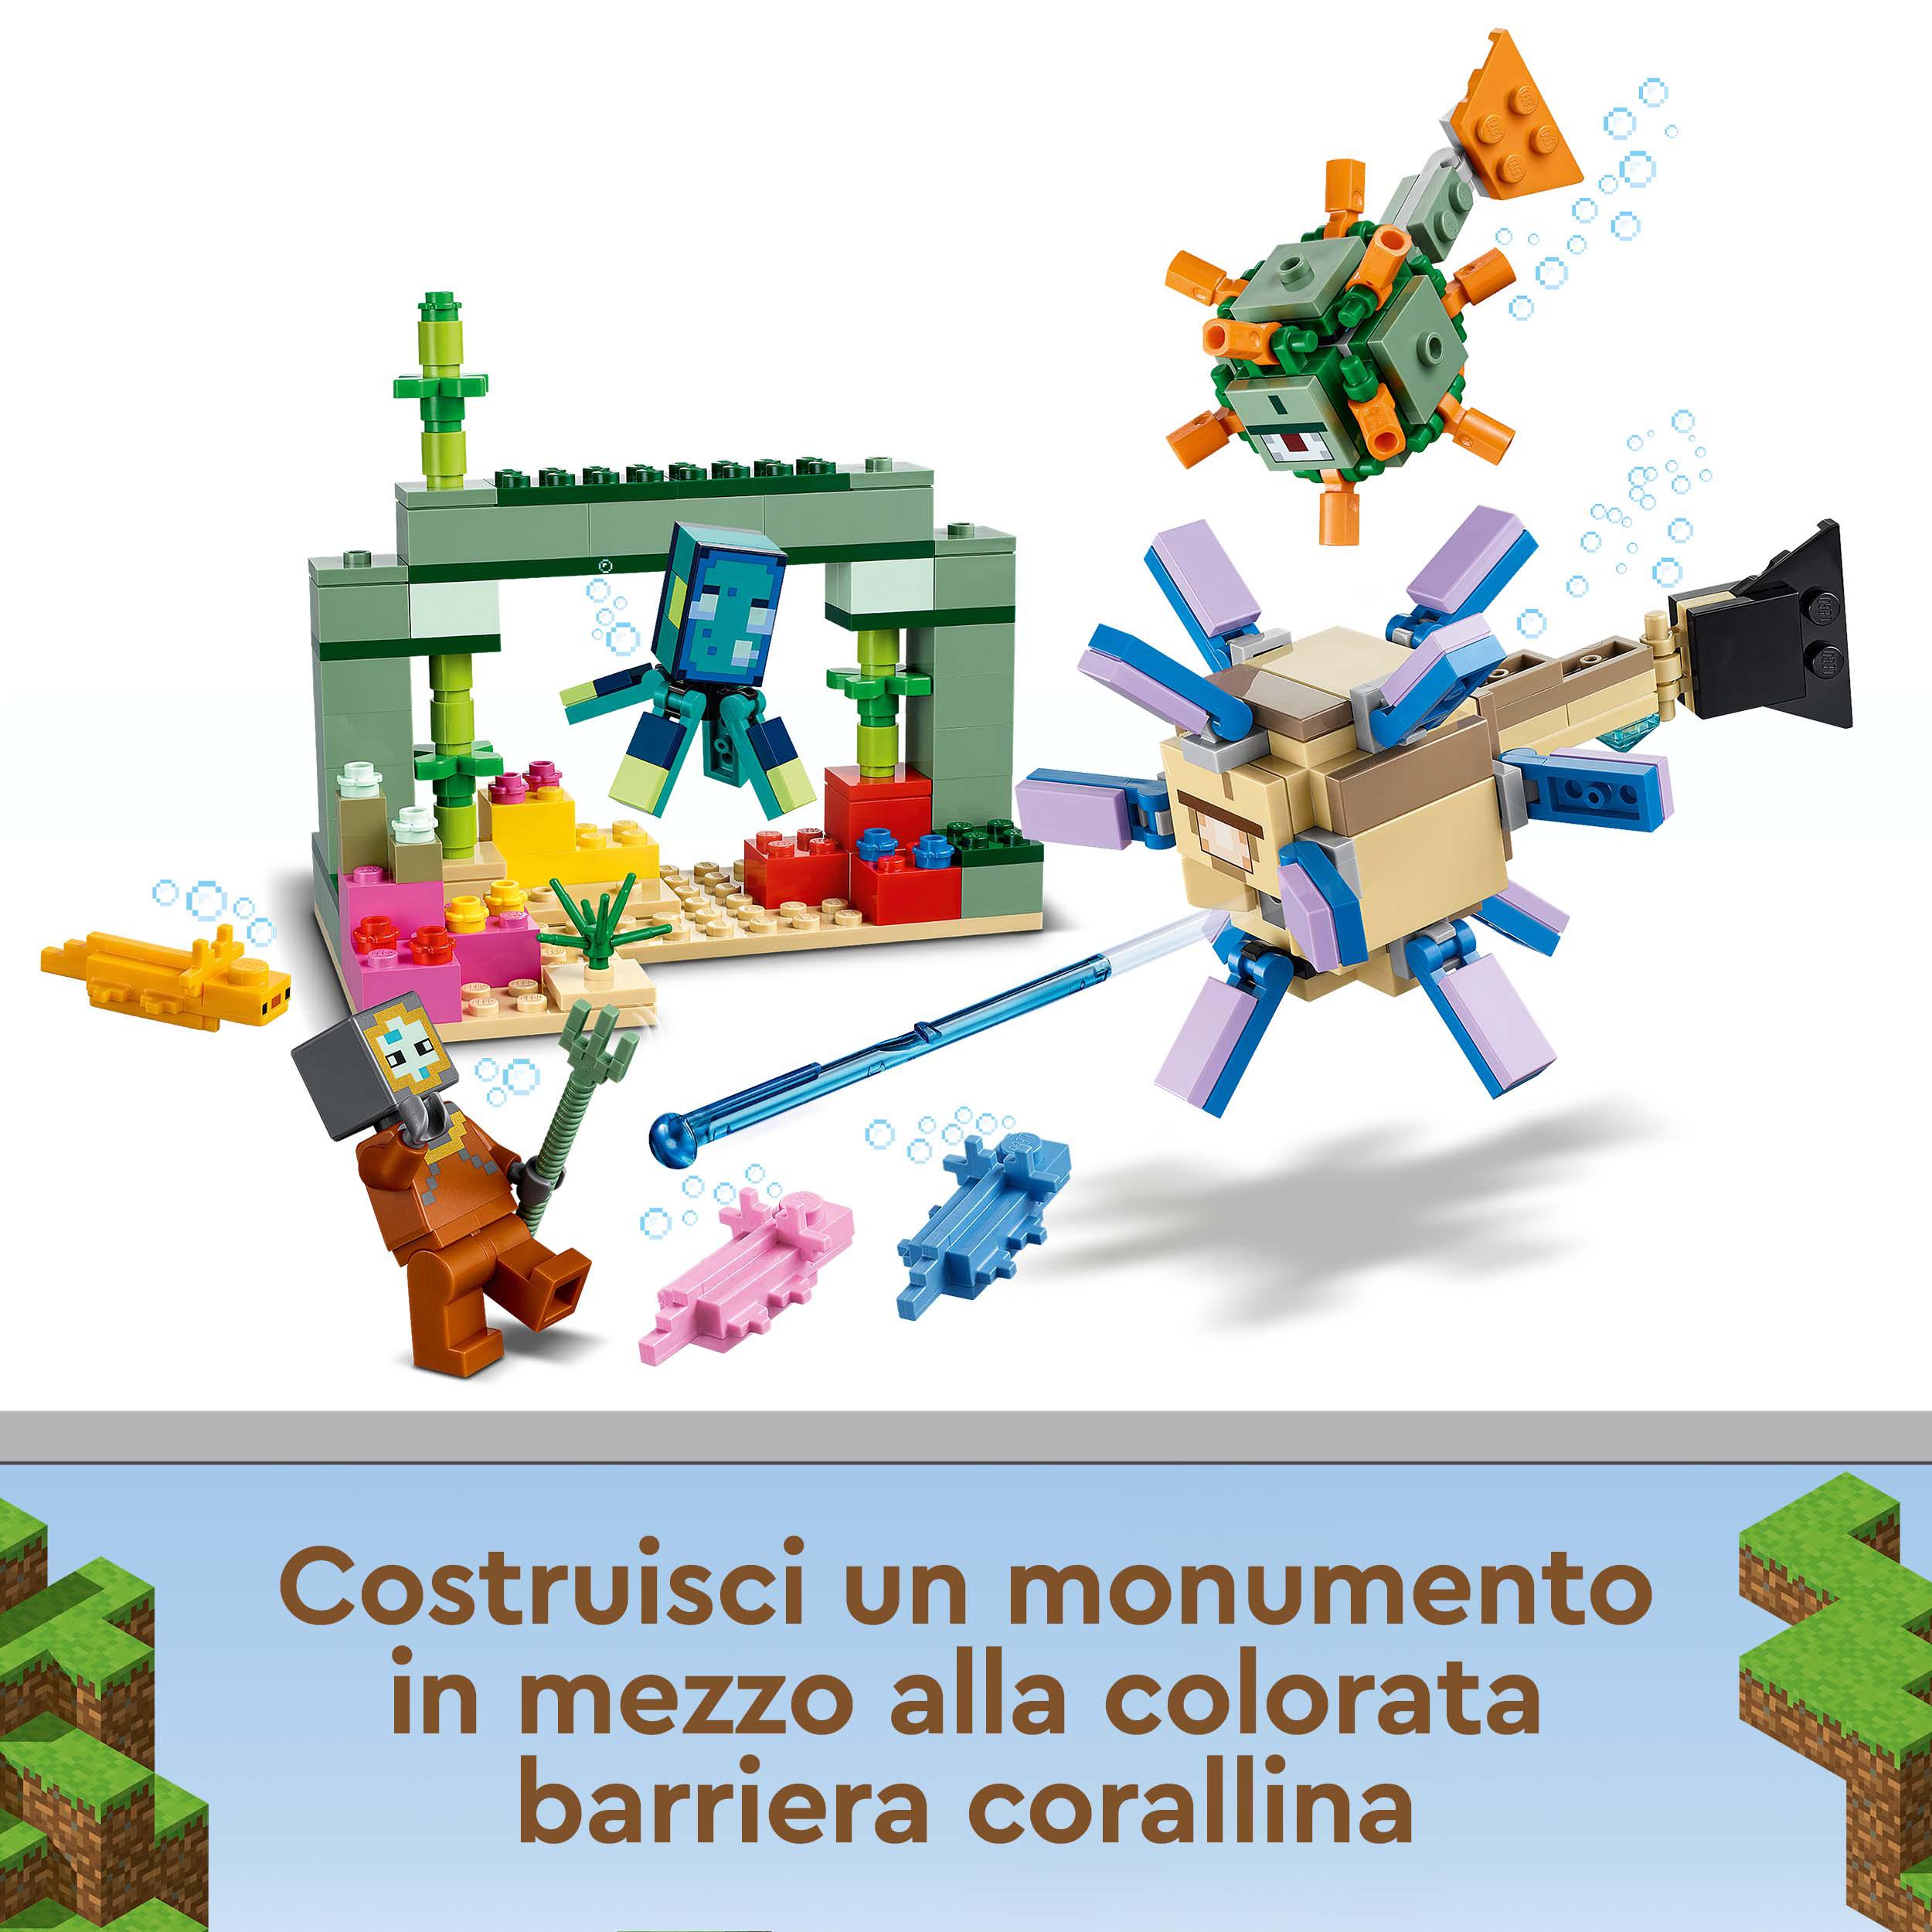 LEGO Minecraft La Battaglia del Guardiano, Avventura Subacquea, Set da Costruzio 21180, , large